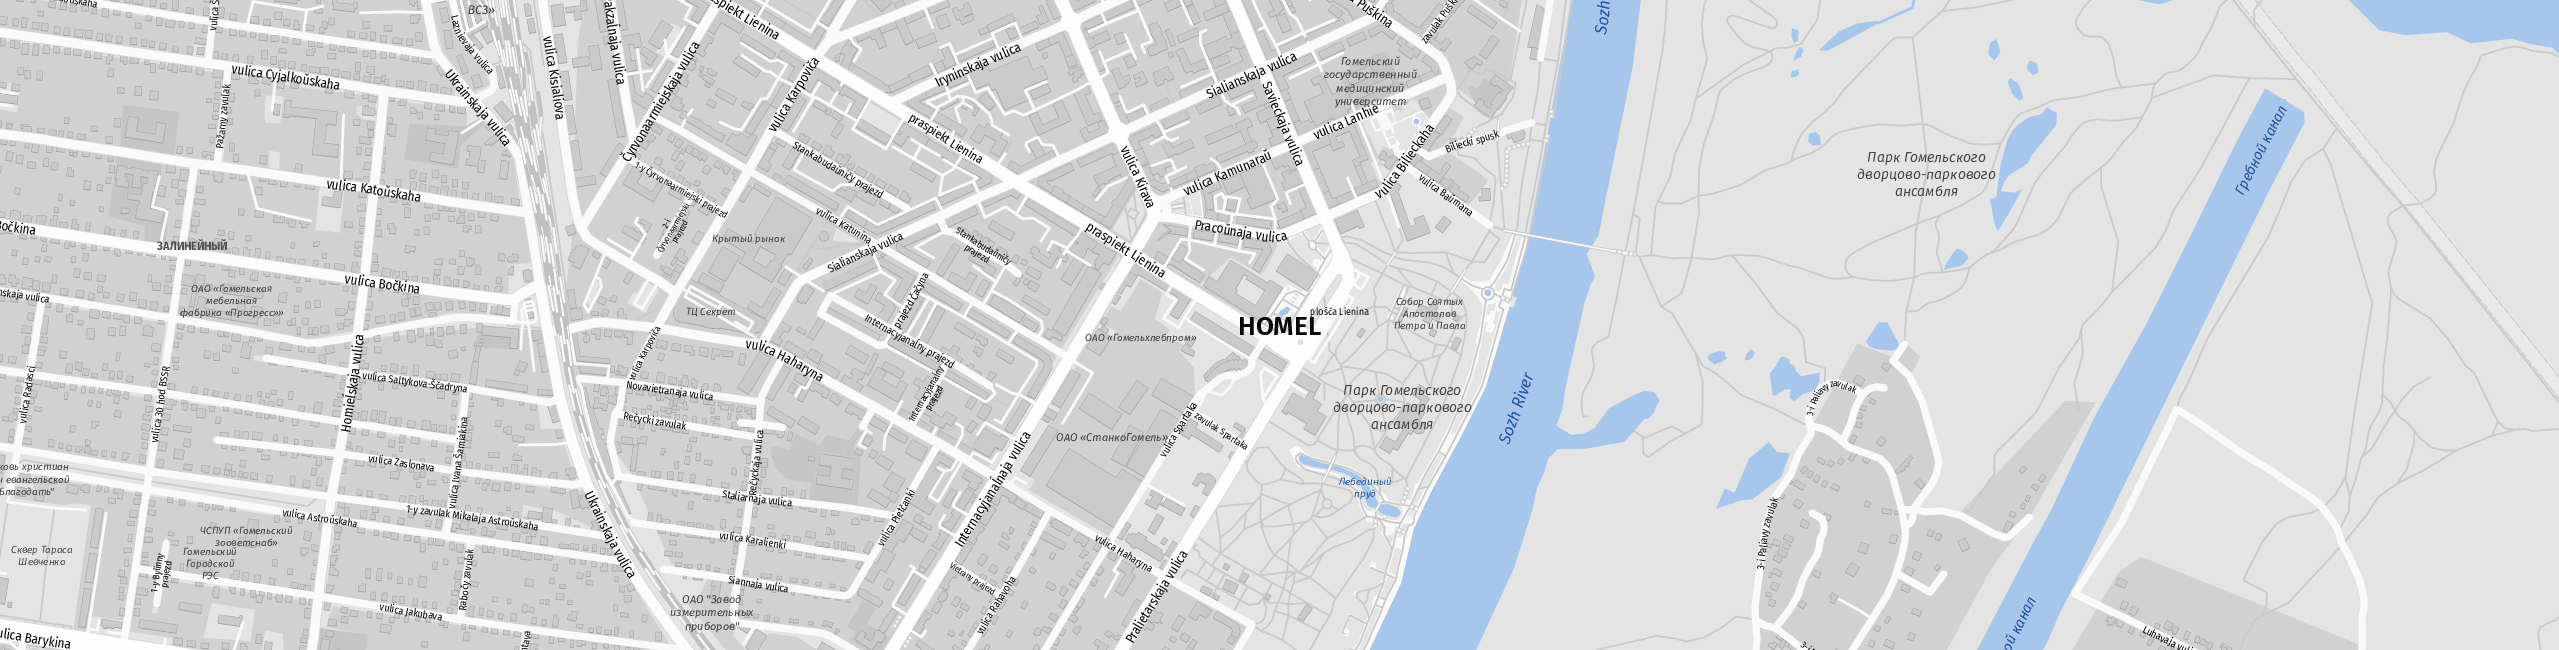 Stadtplan Homel zum Downloaden.